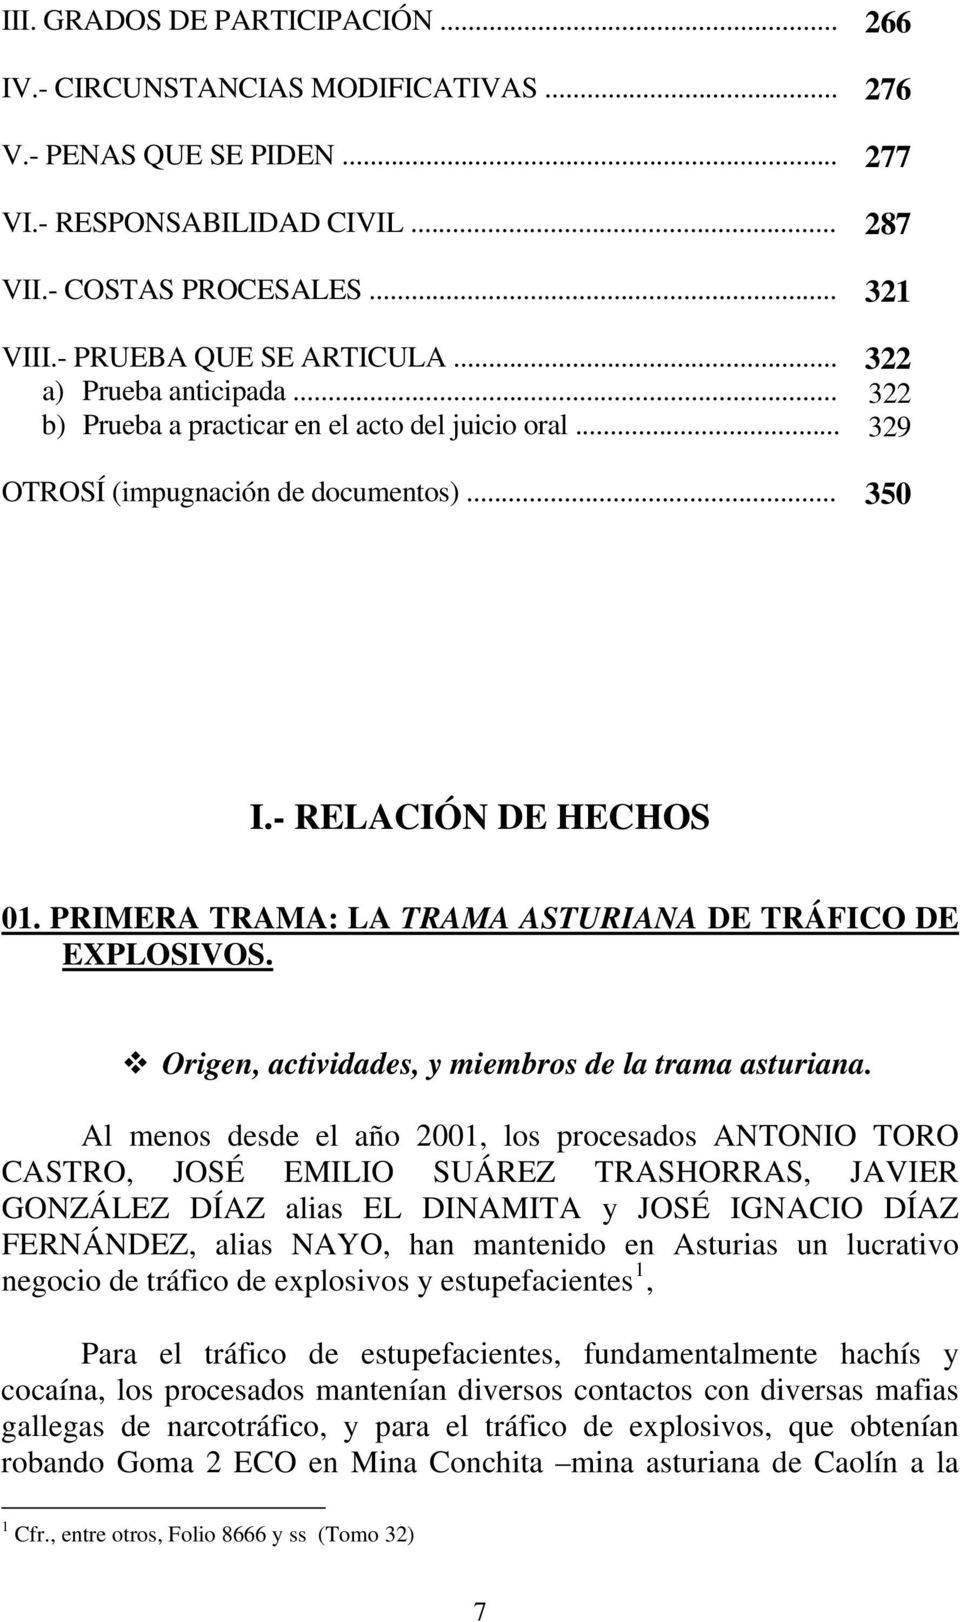 PRIMERA TRAMA: LA TRAMA ASTURIANA DE TRÁFICO DE EXPLOSIVOS. Origen, actividades, y miembros de la trama asturiana.